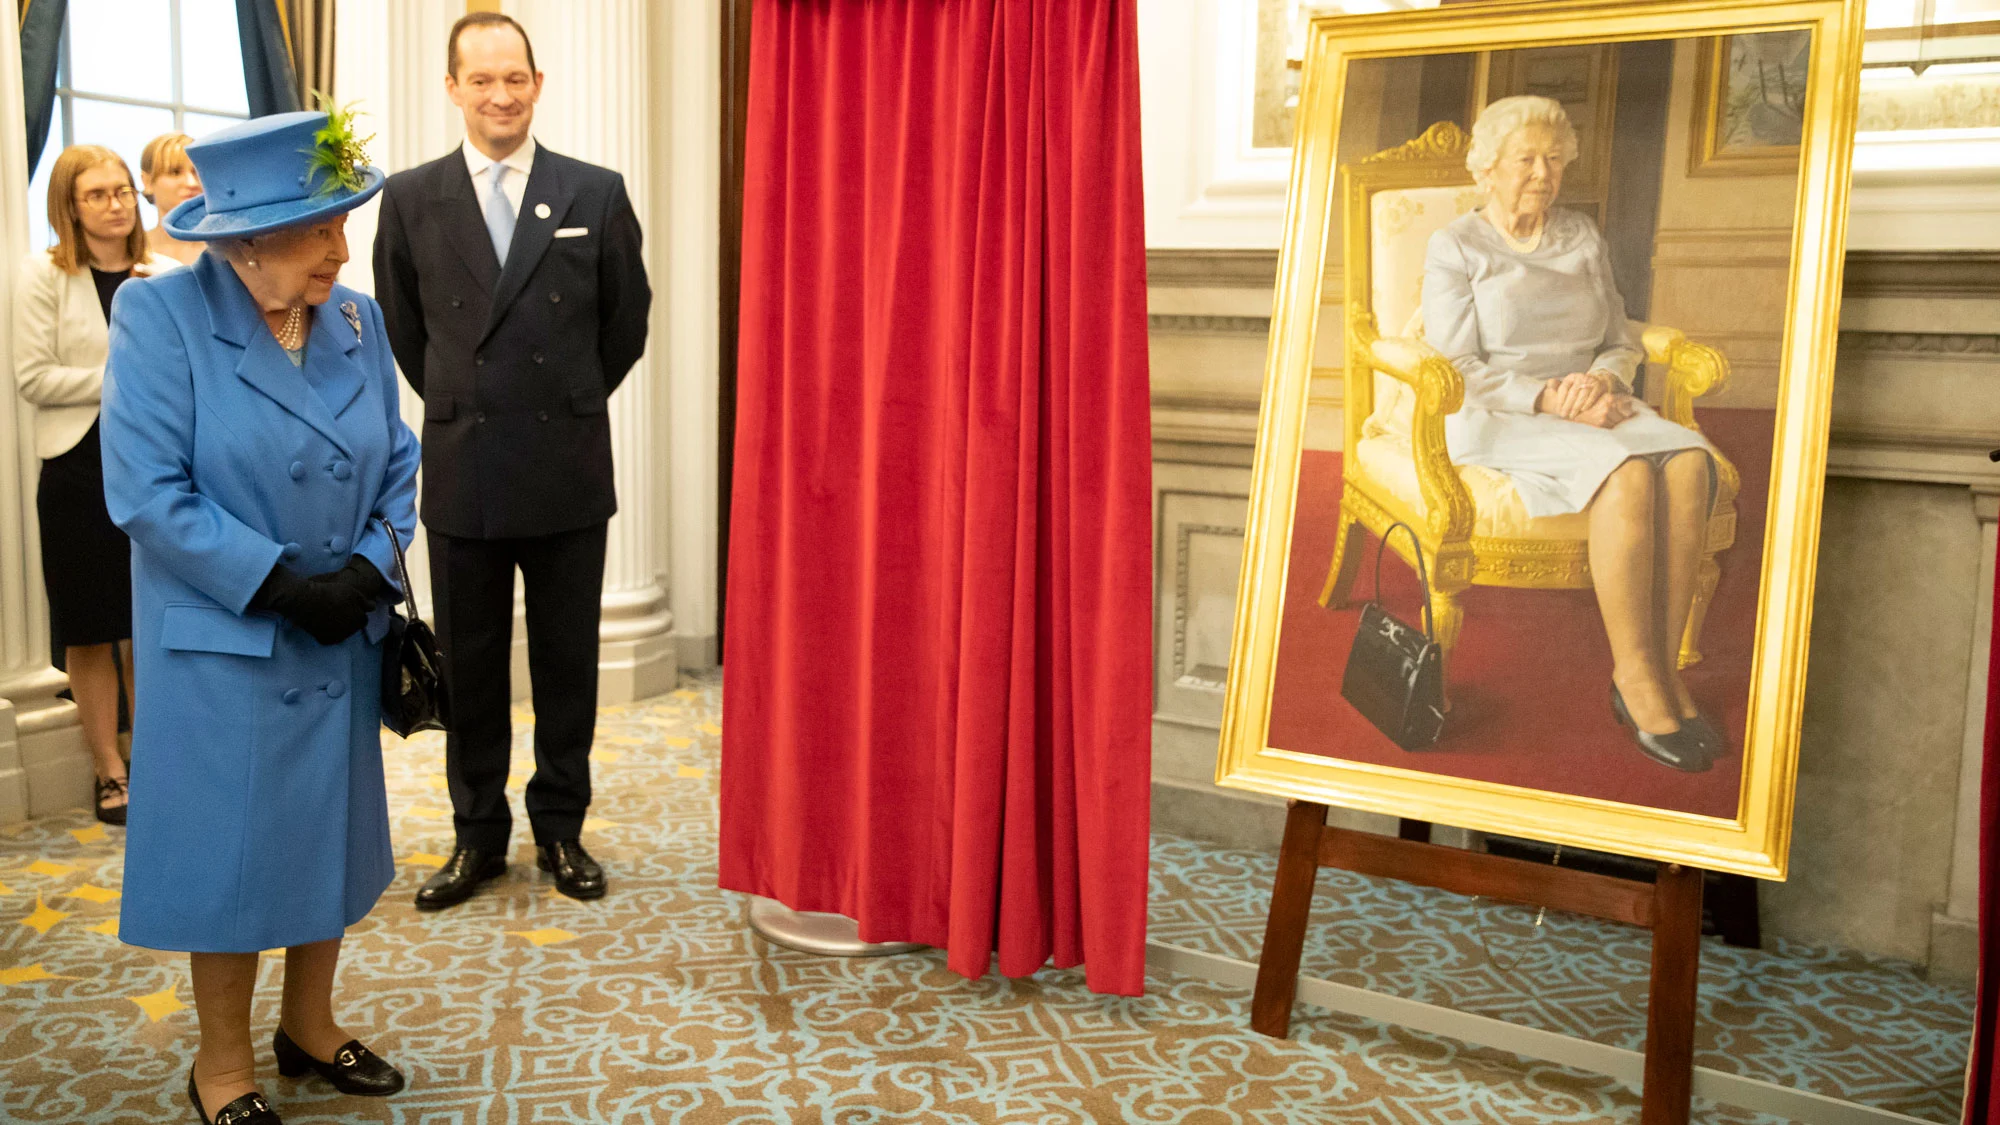 The Queen unveils the portrait of her painted by bp Portrait Awards winner Benjamin Sullivan